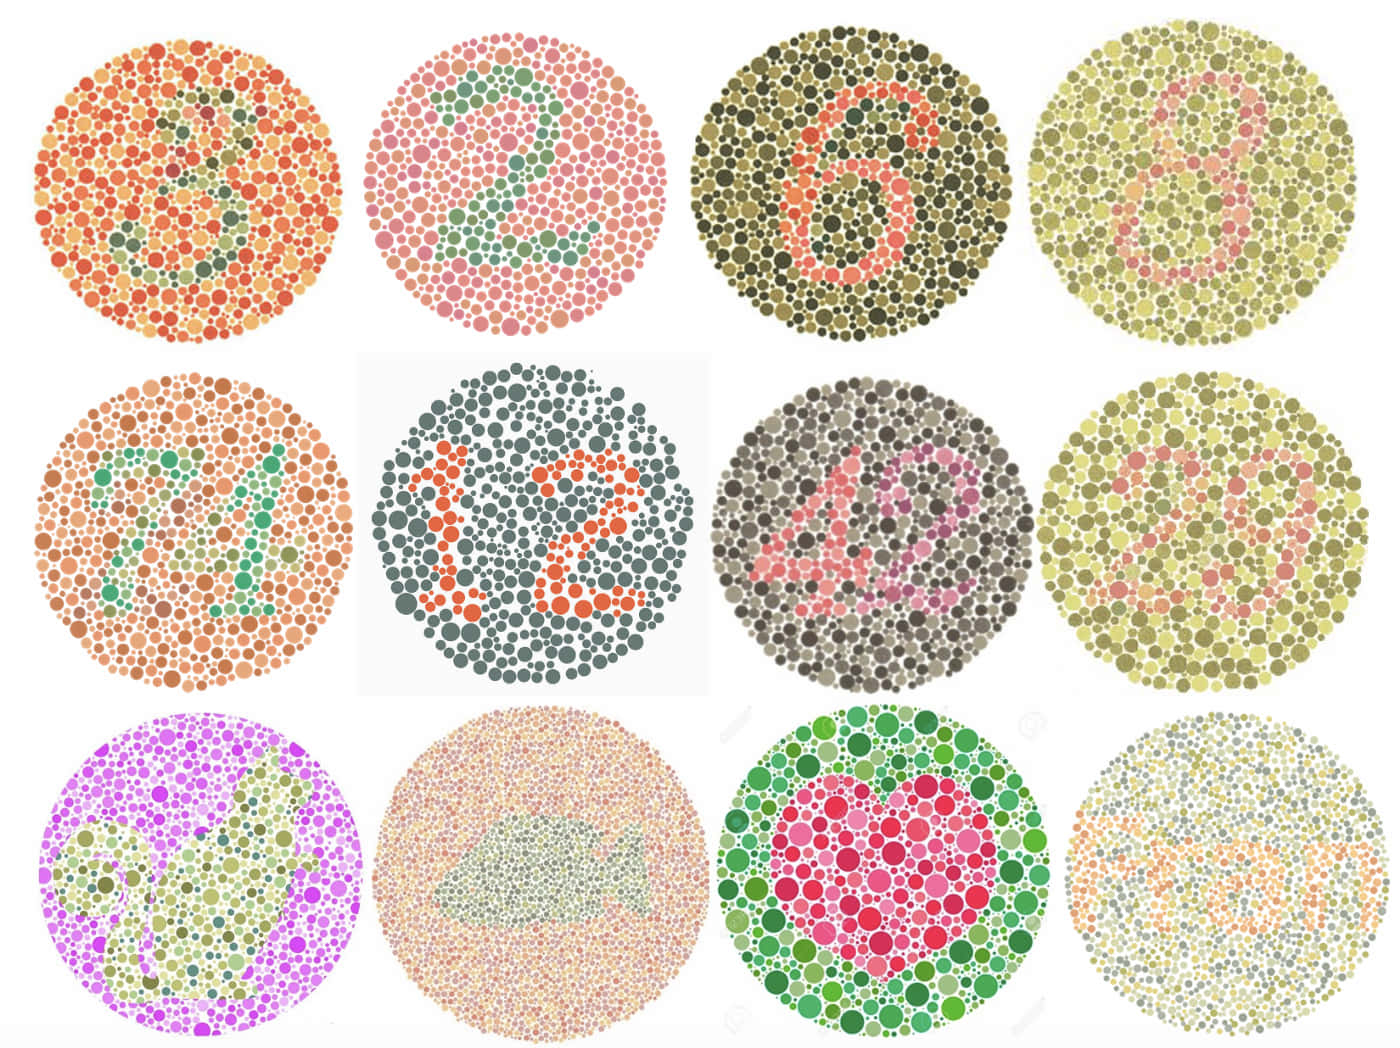 Umconjunto De Círculos Coloridos Com Números Neles.